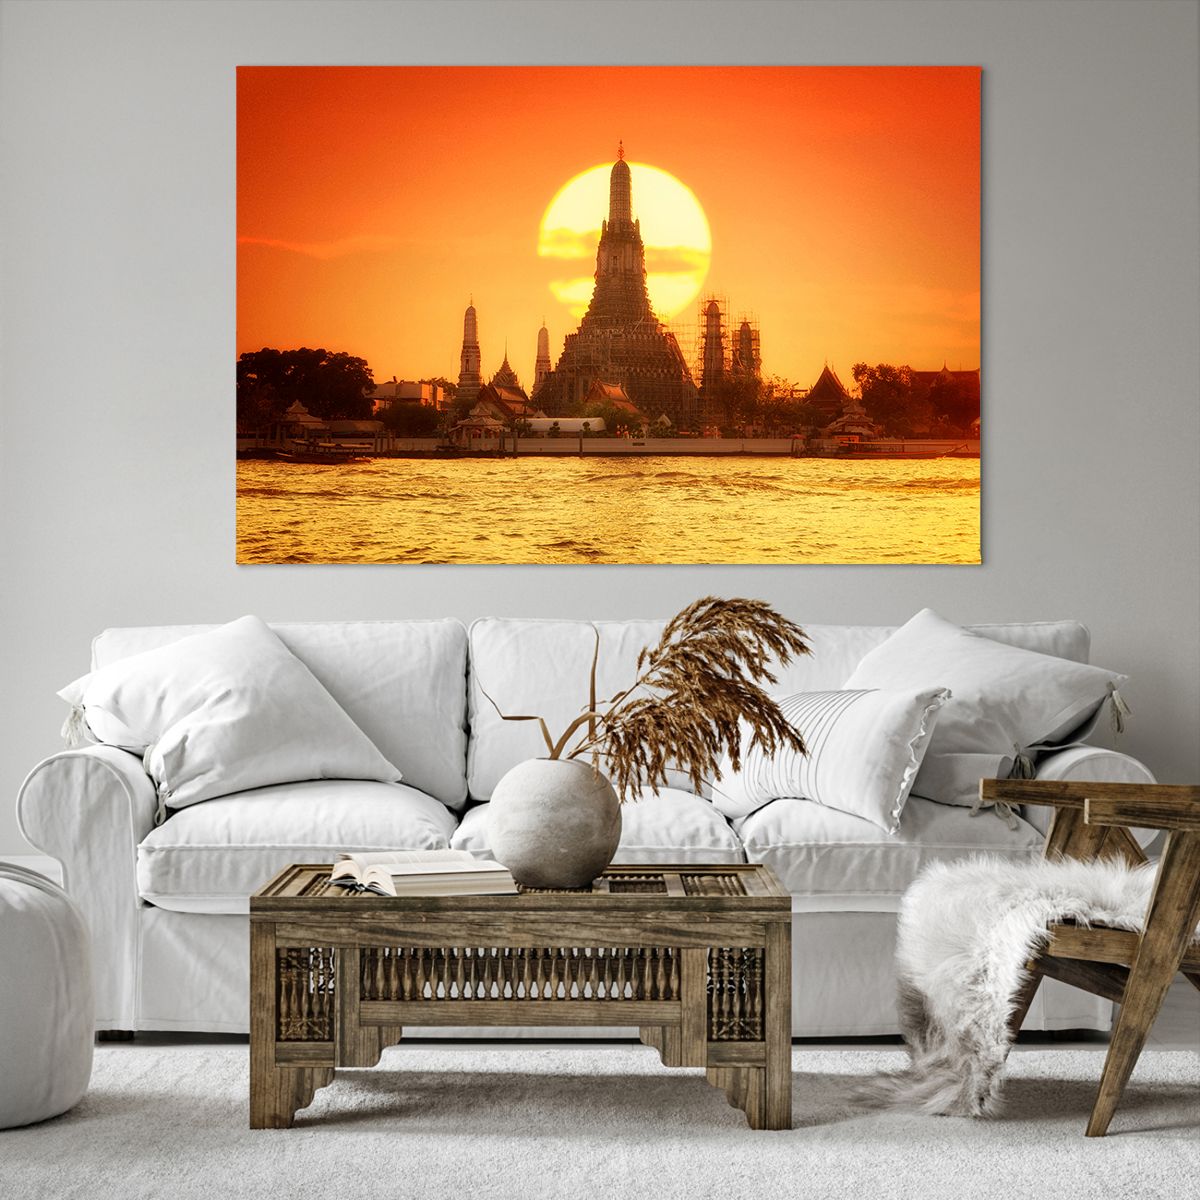 Obrazy na płótnie Bangkok, Obrazy na płótnie Świątynia Świtu, Obrazy na płótnie Tajlandia, Obrazy na płótnie Słońce, Obrazy na płótnie Buddyzm